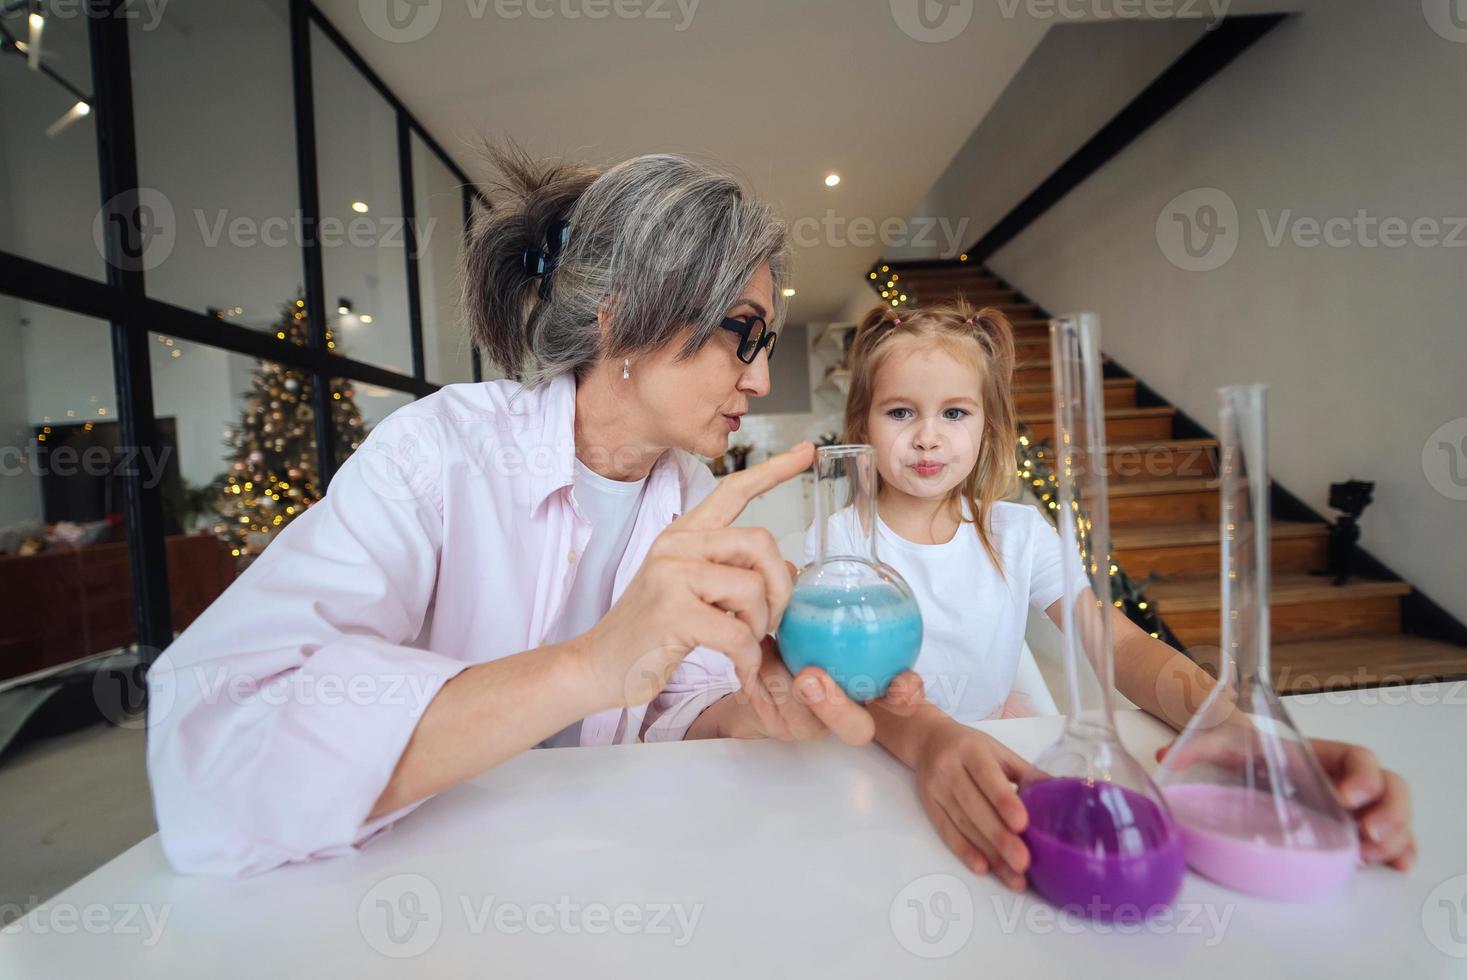 une vieille grand-mère attentive assiste son petit-enfant dans des recherches scientifiques amusantes photo